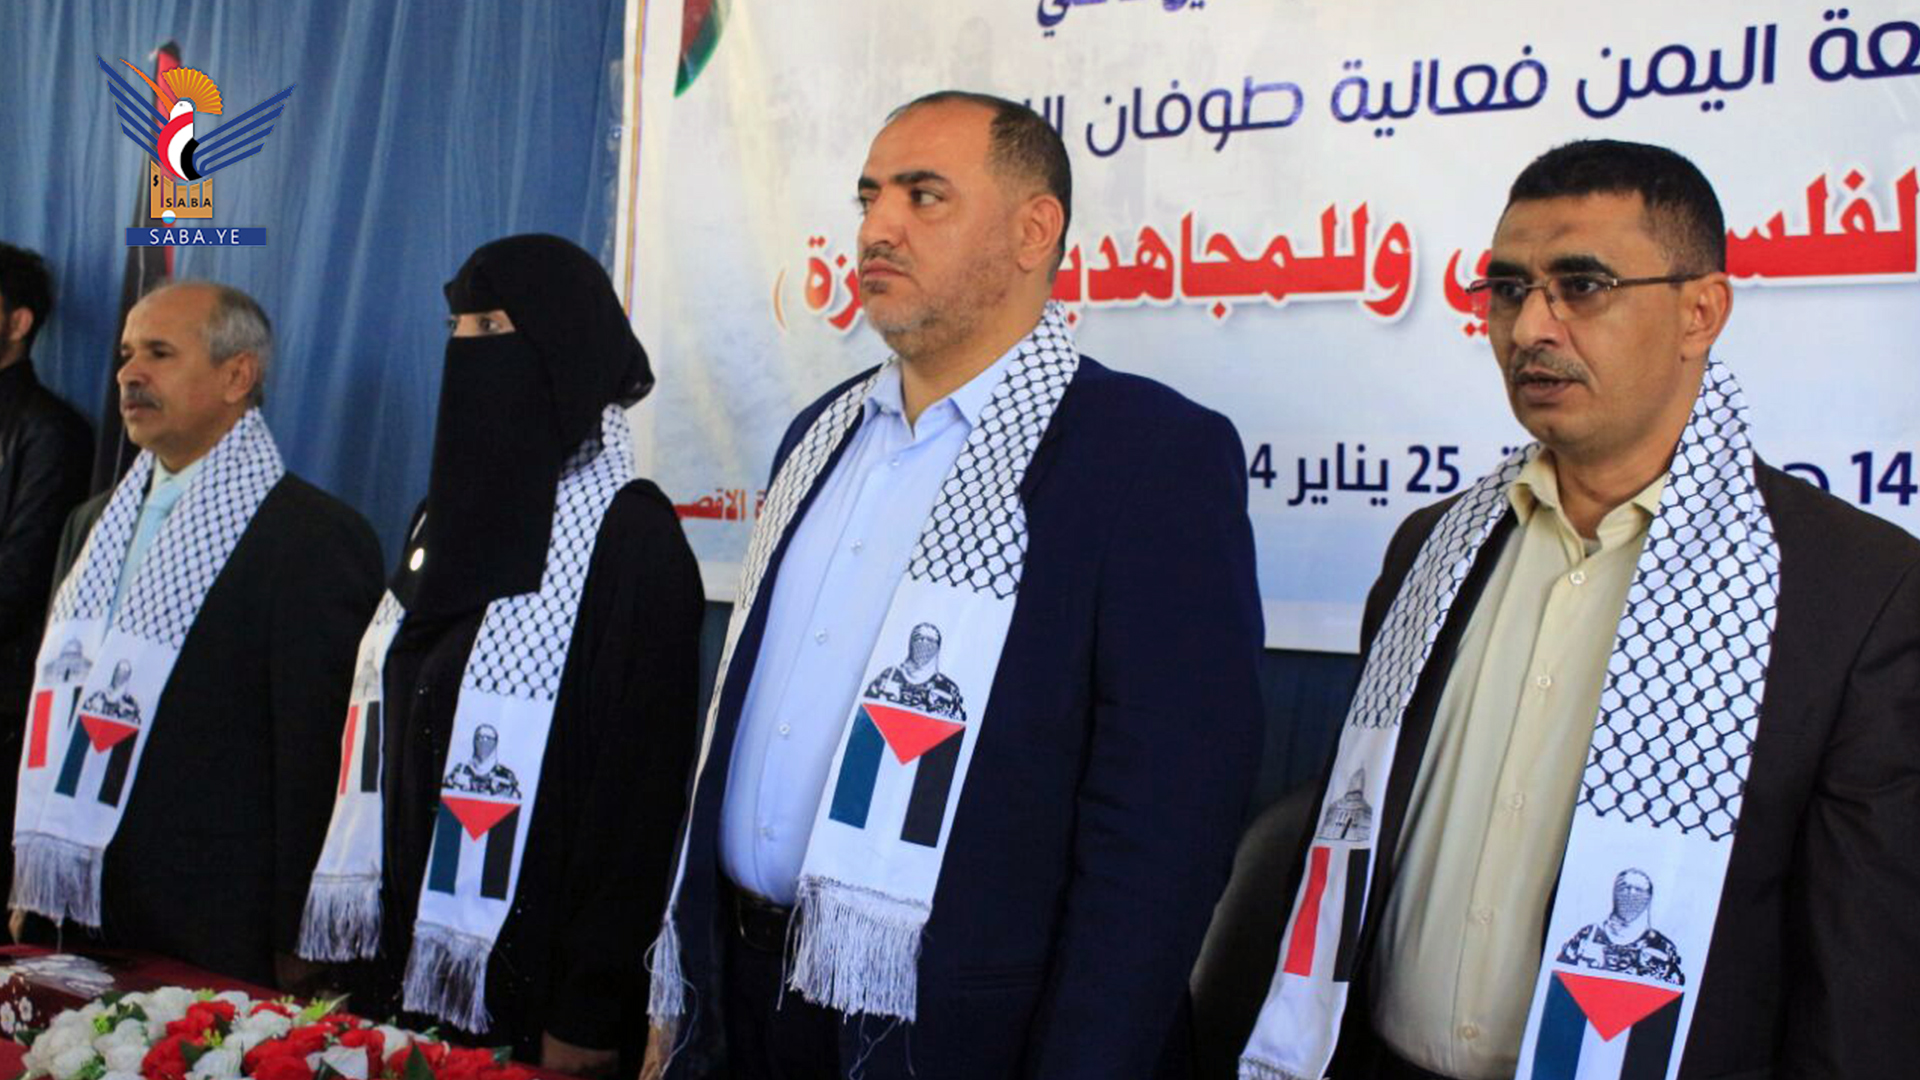 فعالية خطابية بجامعة اليمن تضامناً مع الشعب الفلسطيني